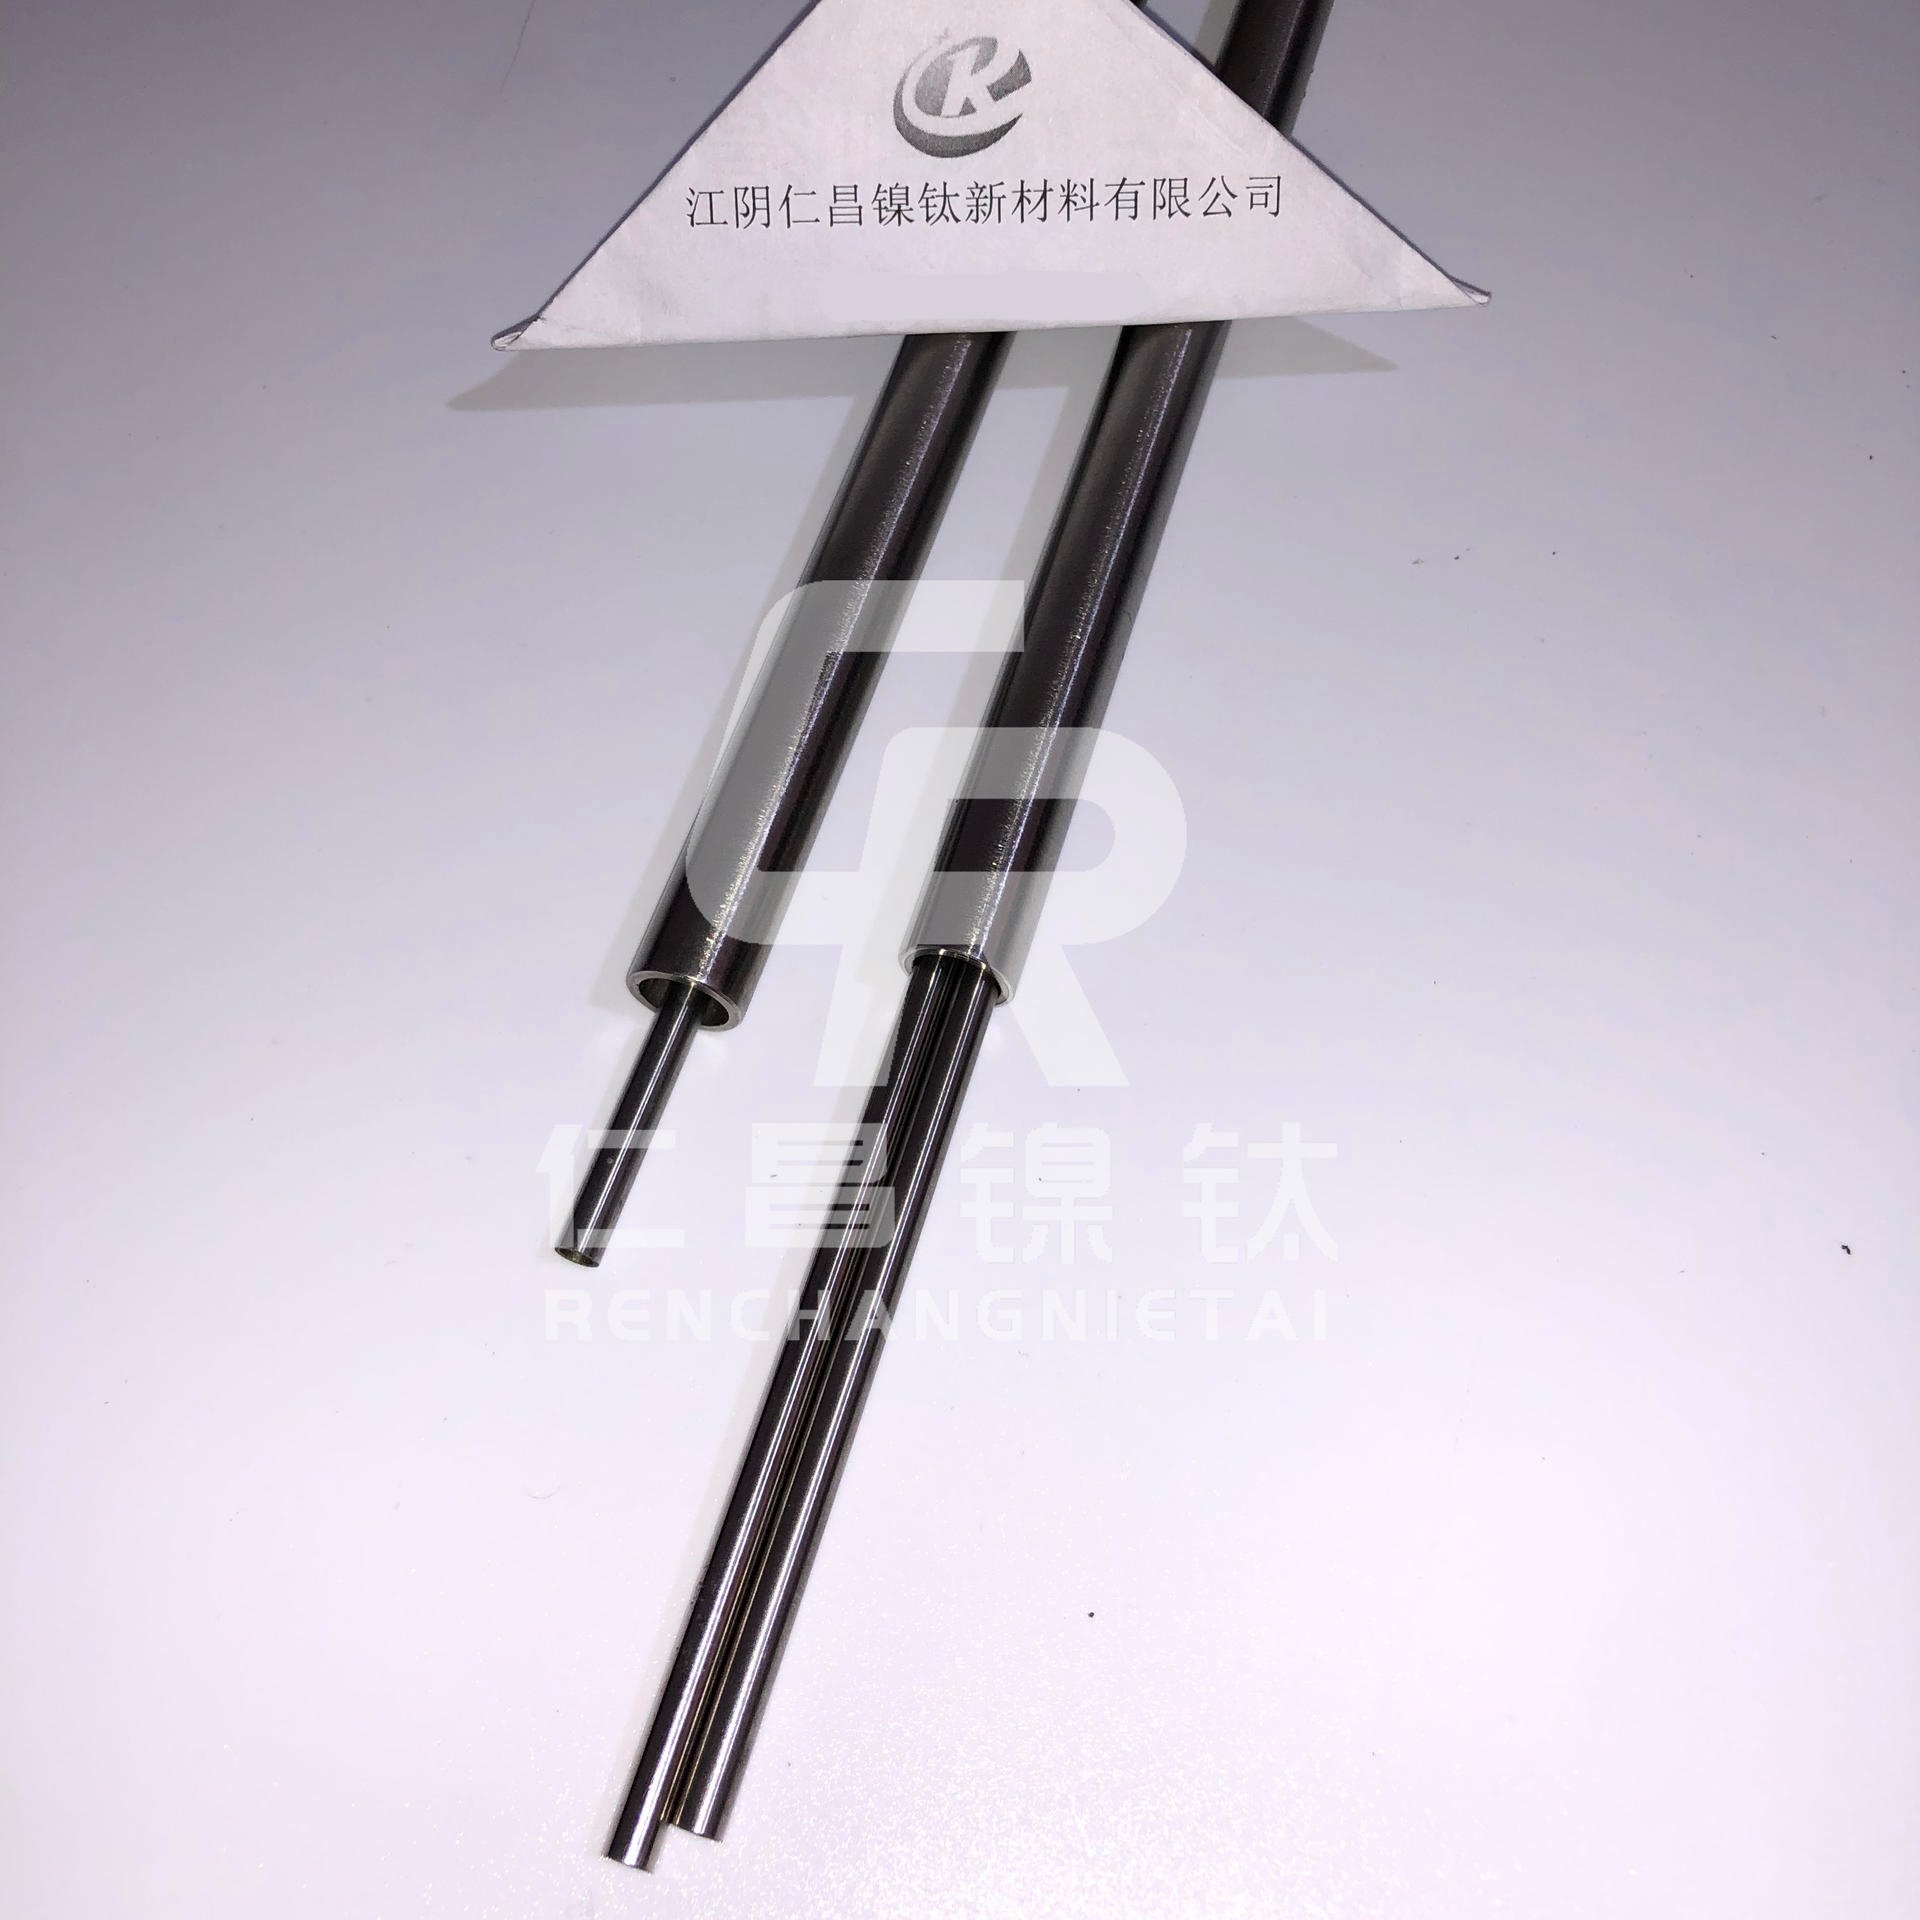 镍钛合金超弹管 ASTM F2633标准 GB24627-2009标准